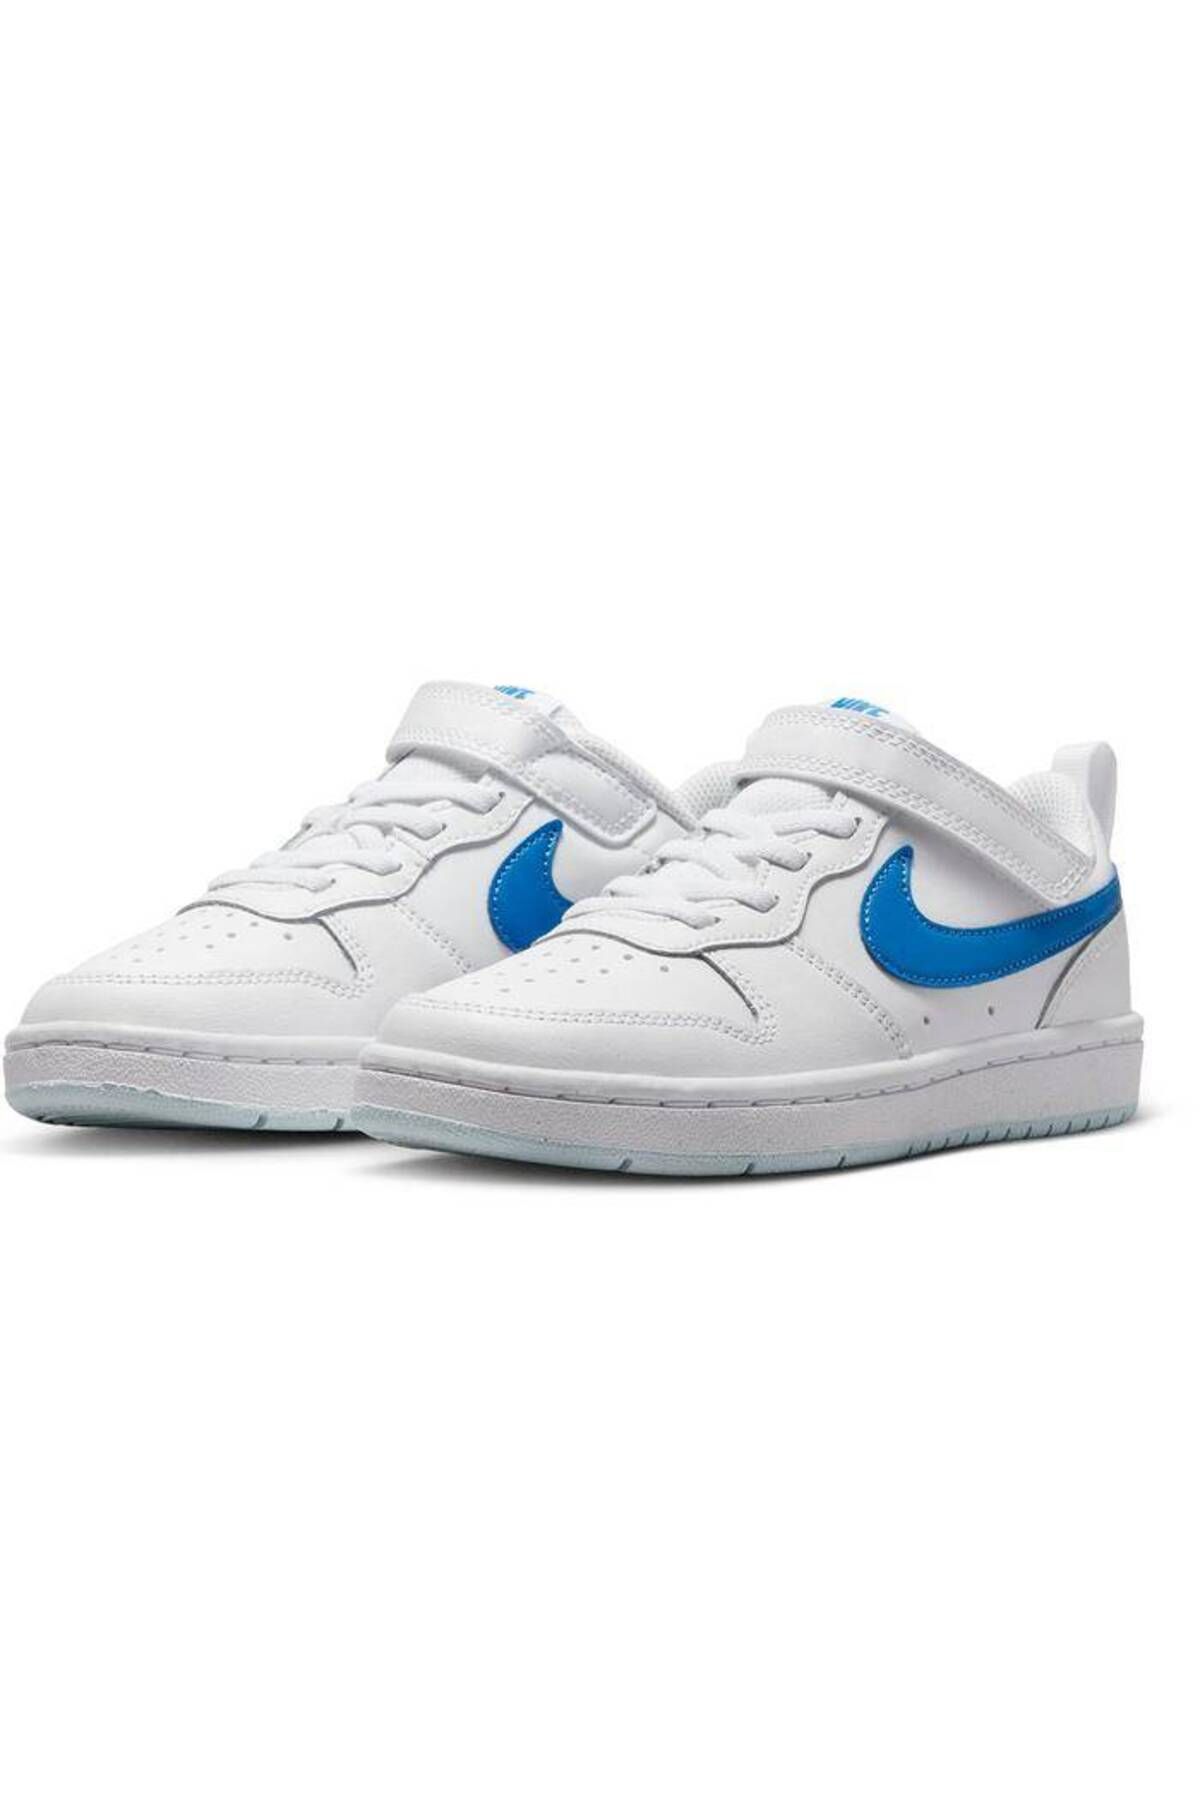 Nike Court Borough Low 2 (Psv) Çocuk Beyaz Sneaker Ayakkabı bq5451-123 stilim SPOR